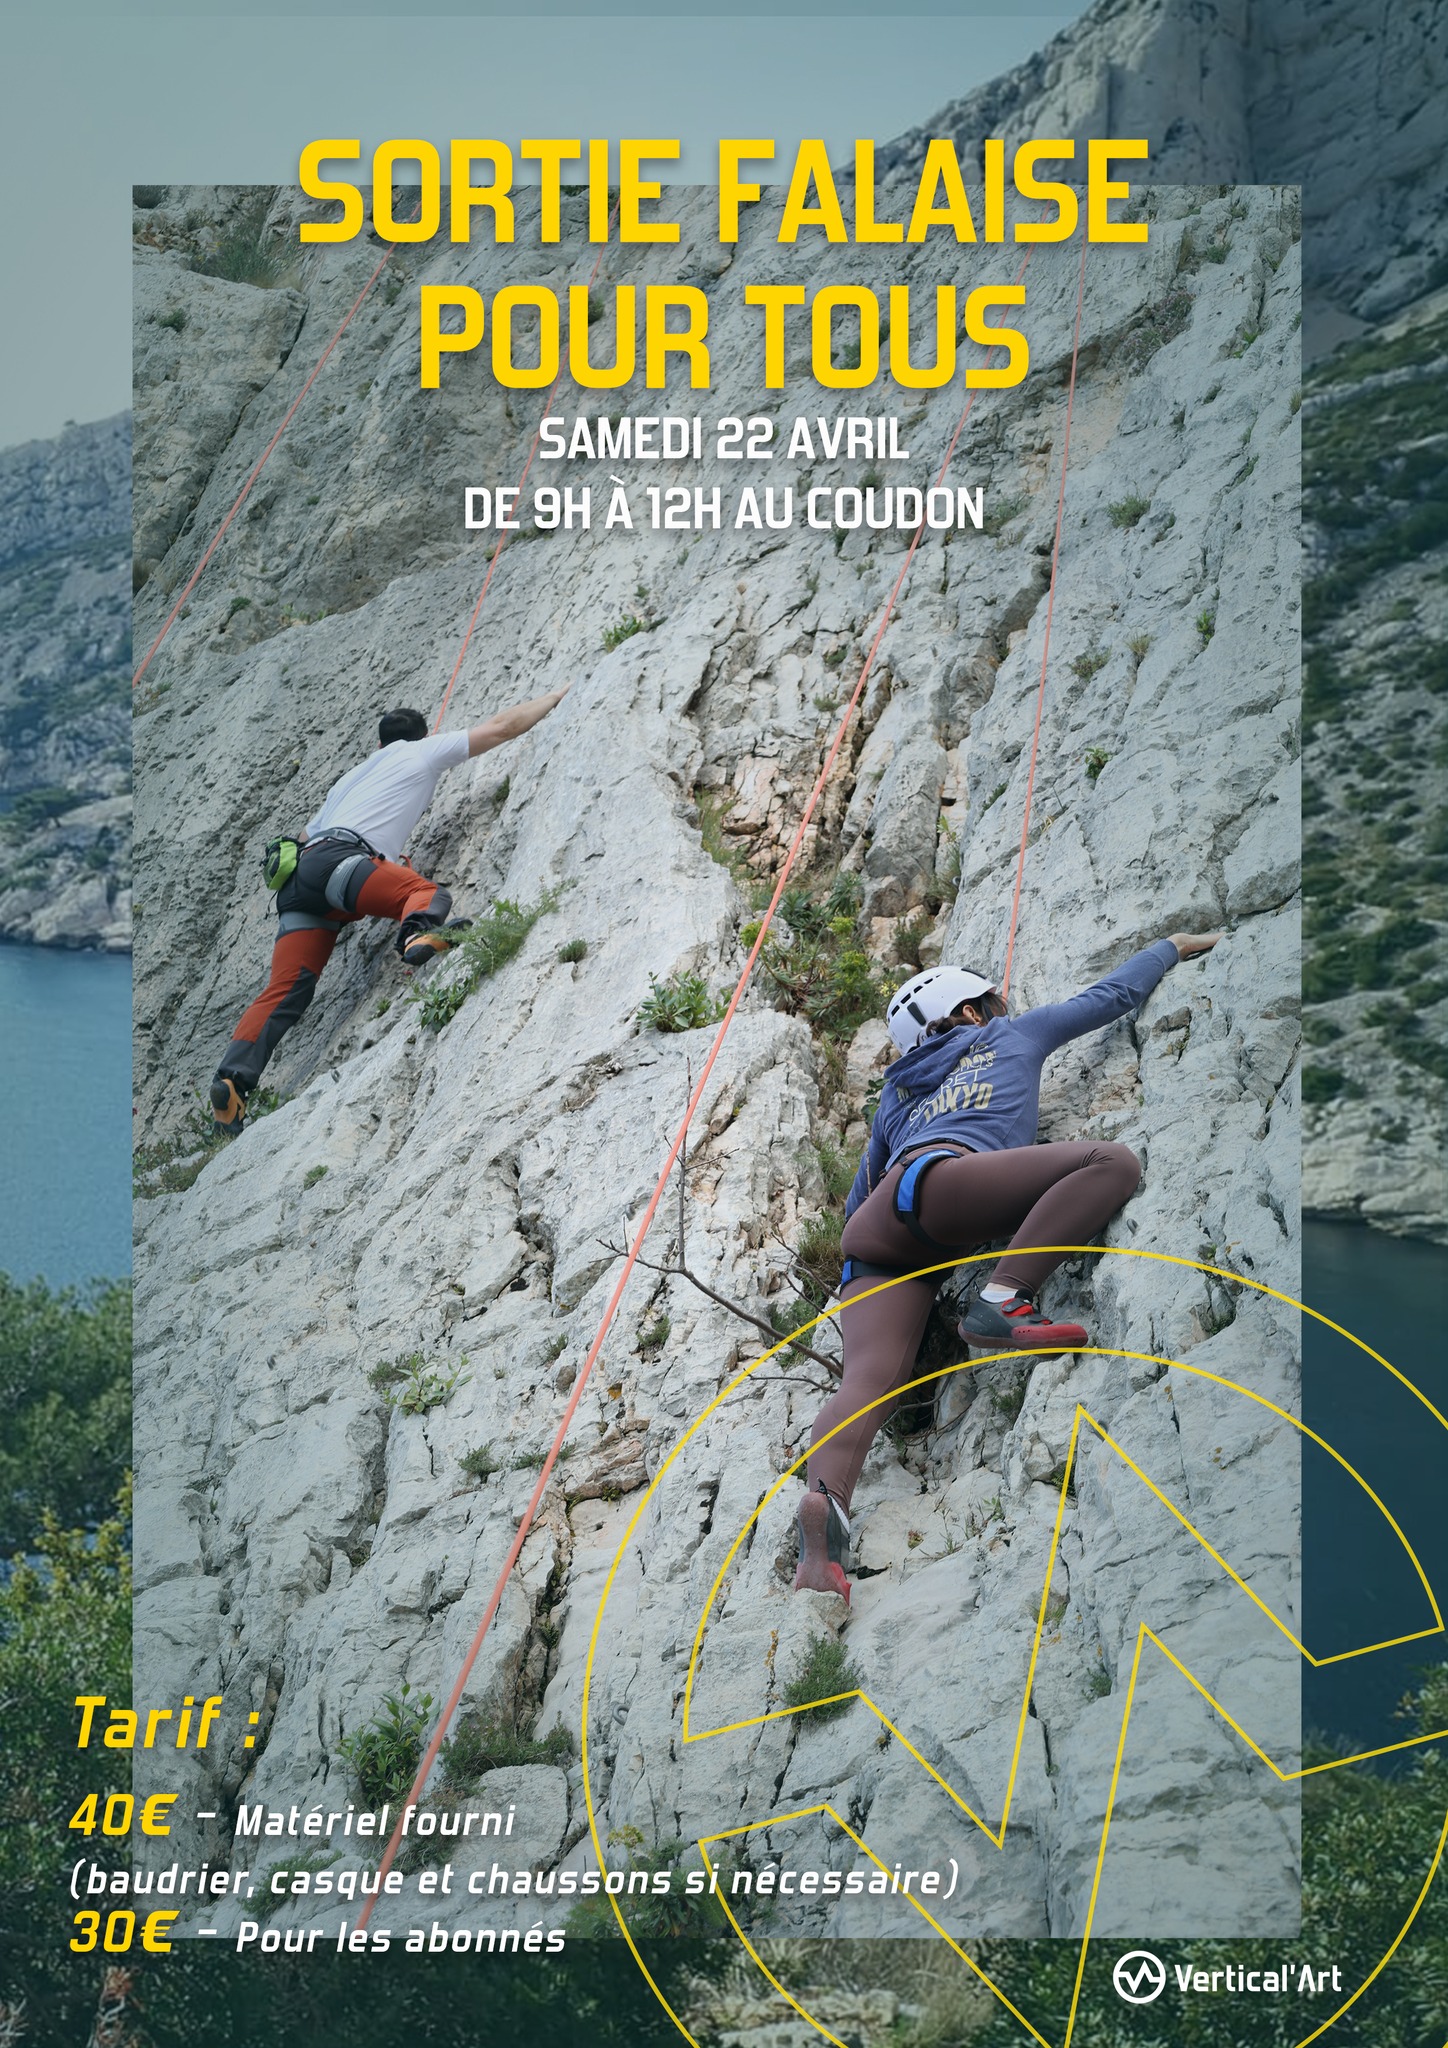 Sortie d'escalade en falaise au Coudon samedi 22 avril avec Vertical'Art Toulon